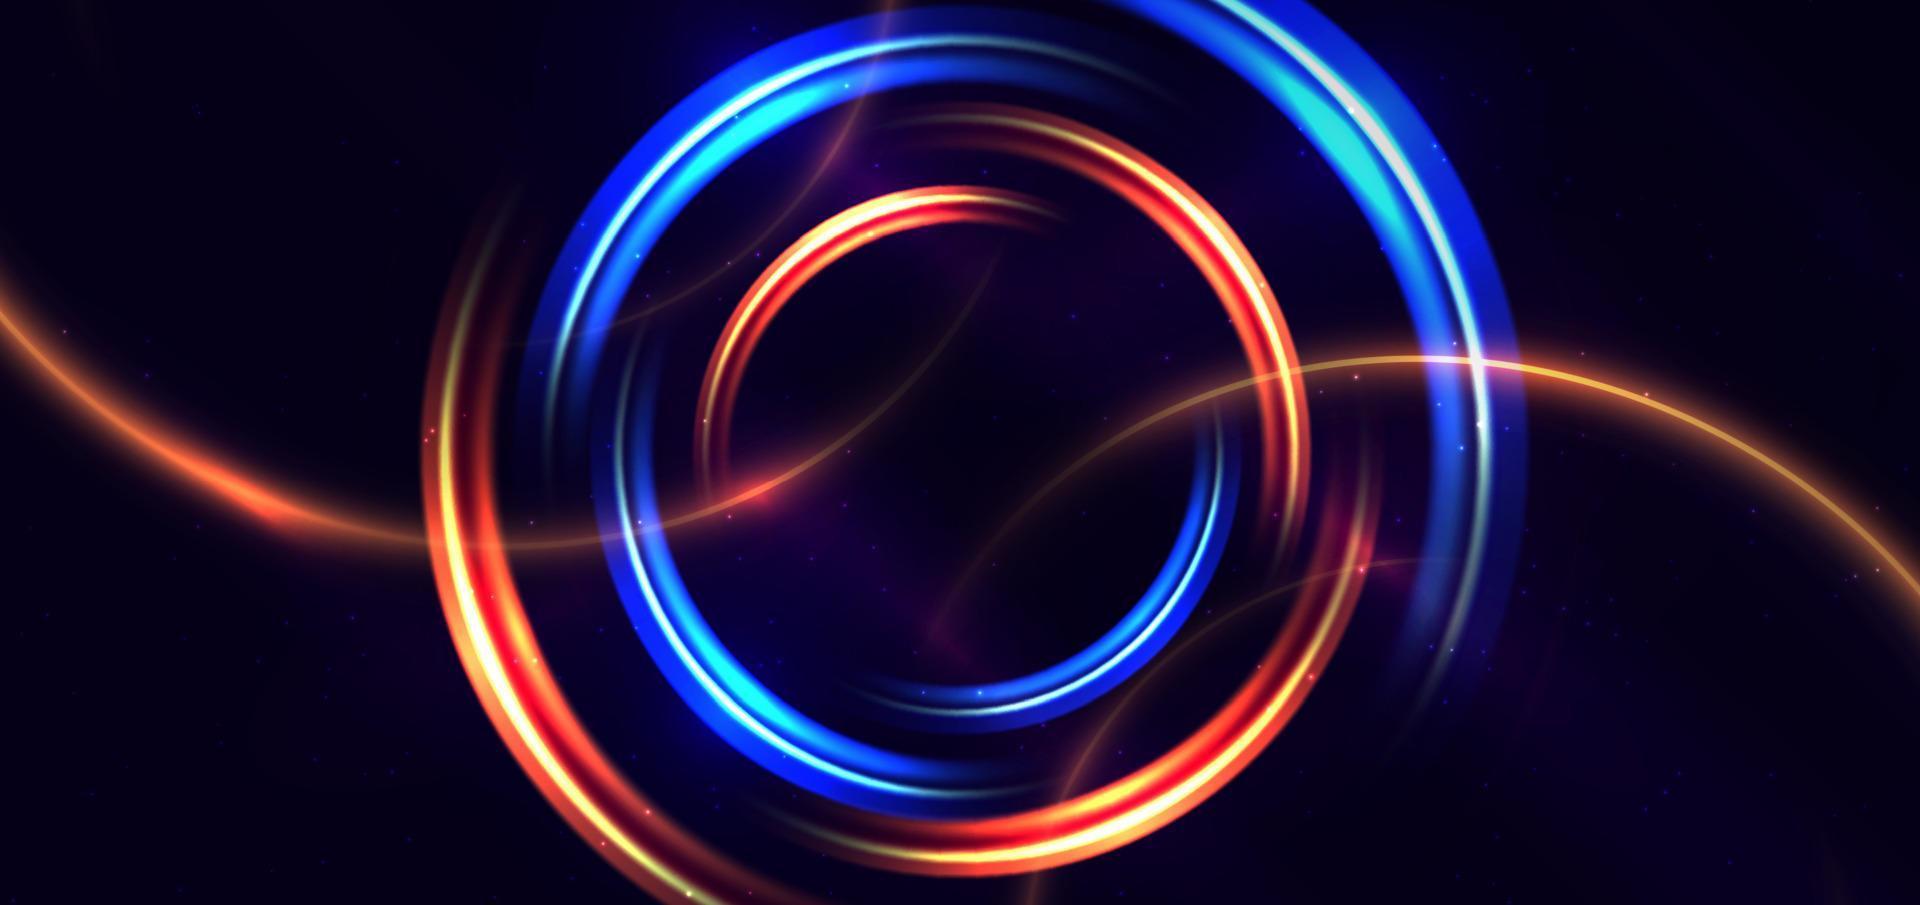 abstrakte technologie futuristischer neonkreis leuchtende blaue und orangefarbene lichtlinien mit geschwindigkeitsbewegungsunschärfeeffekt auf dunkelblauem hintergrund. vektor